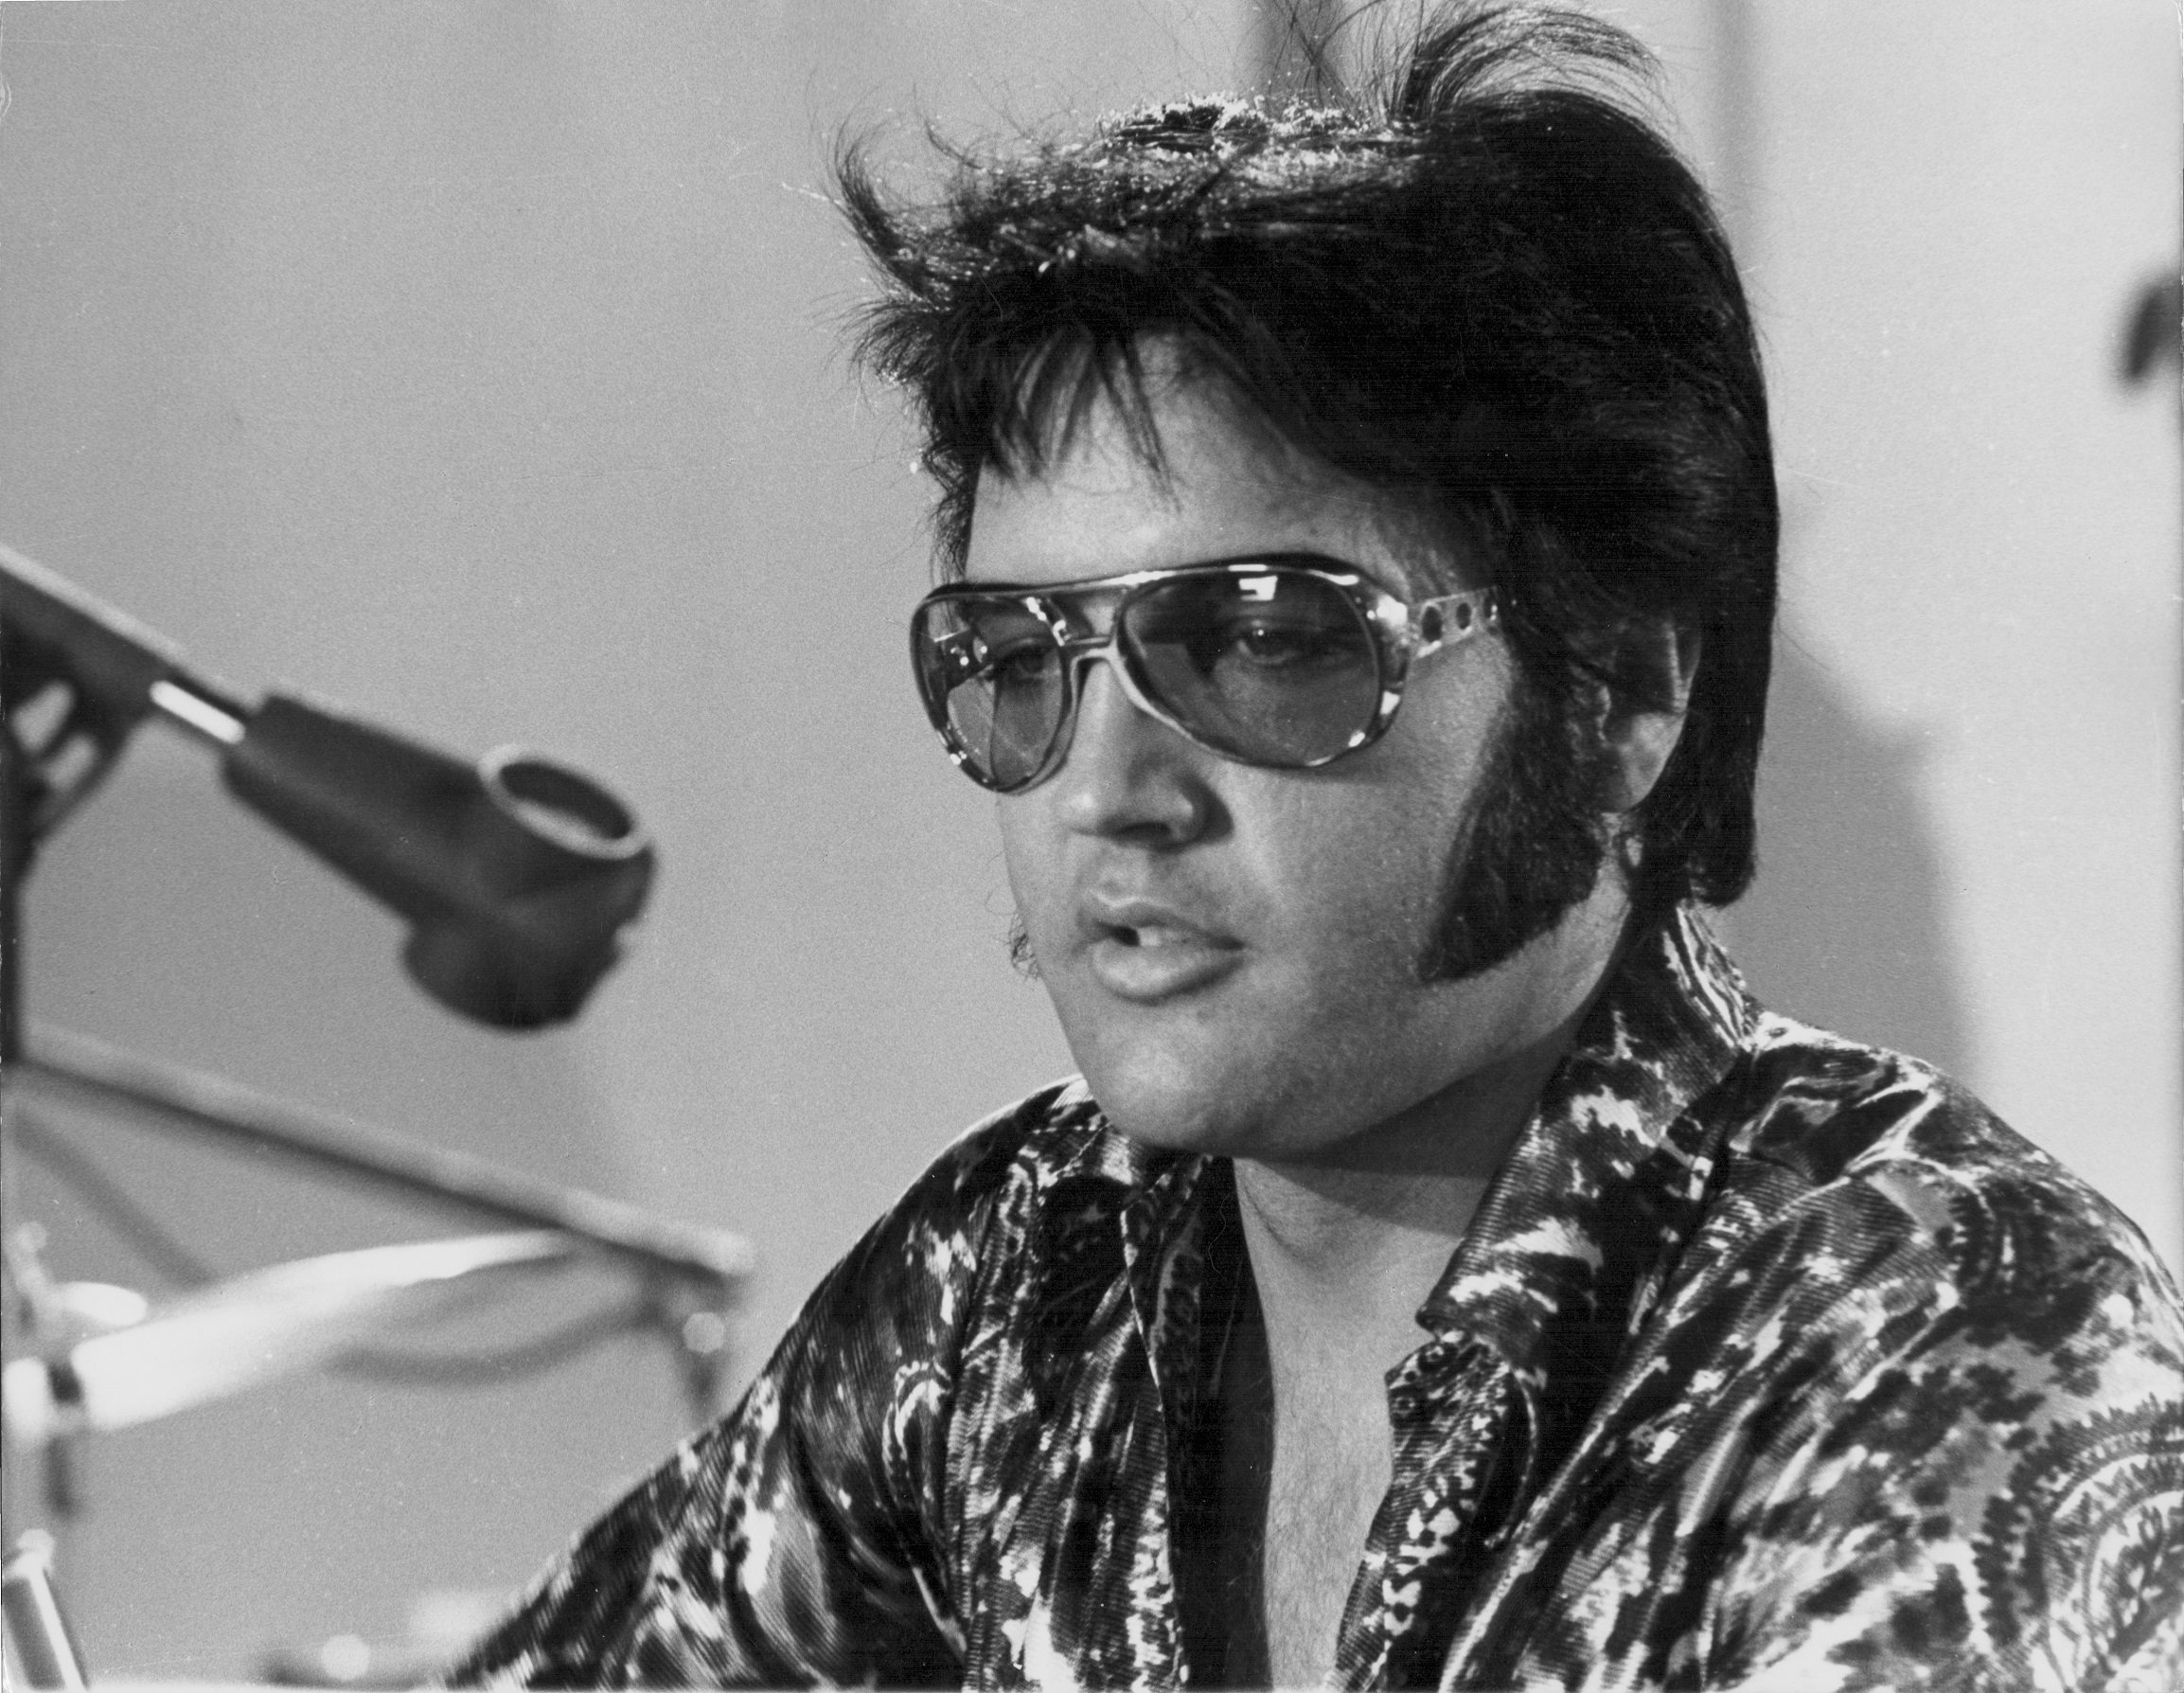 Elvis Presley wearing sunglasses